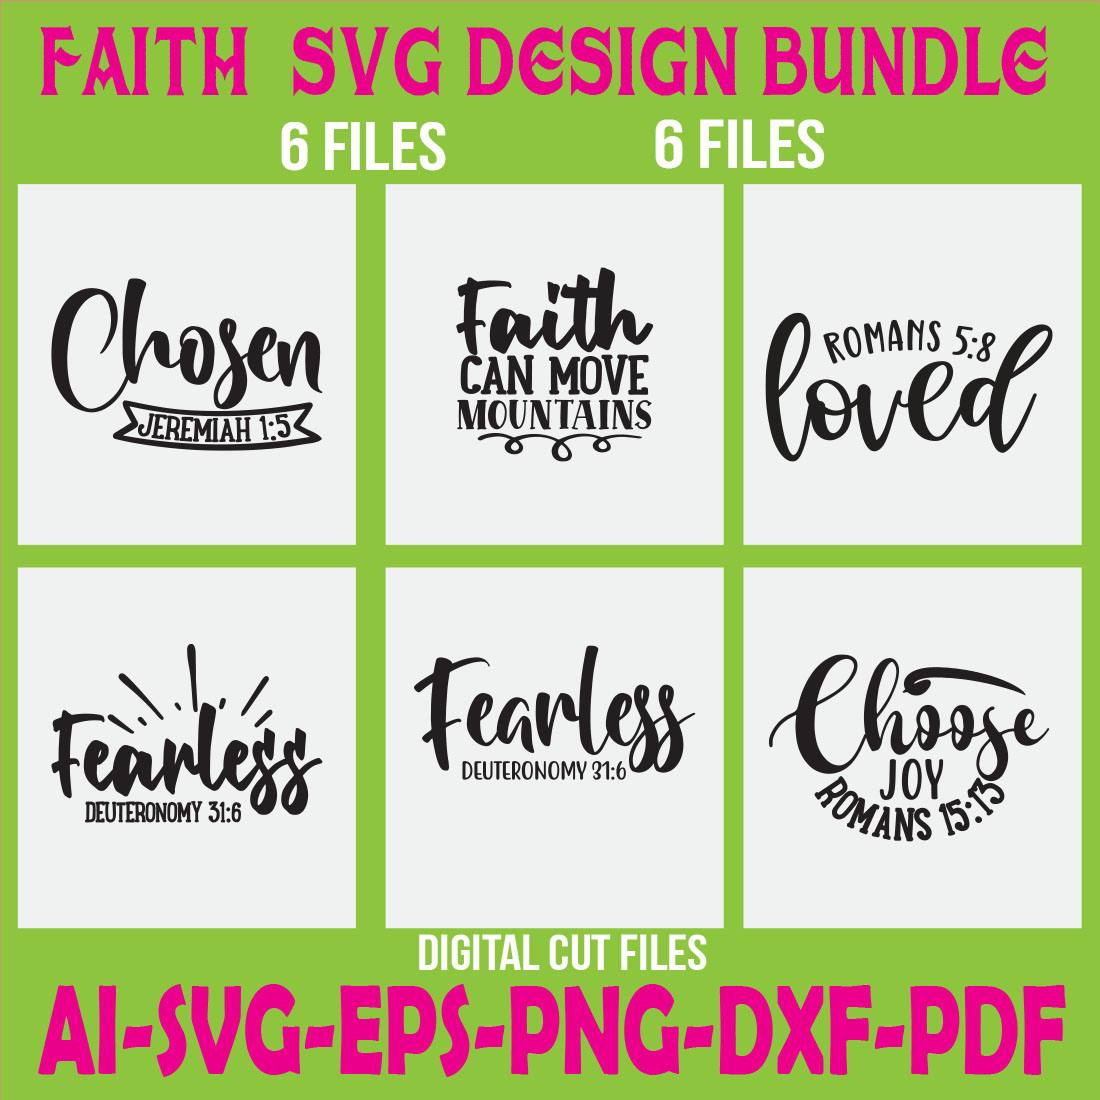 Faith SVG Design bundle cover image.